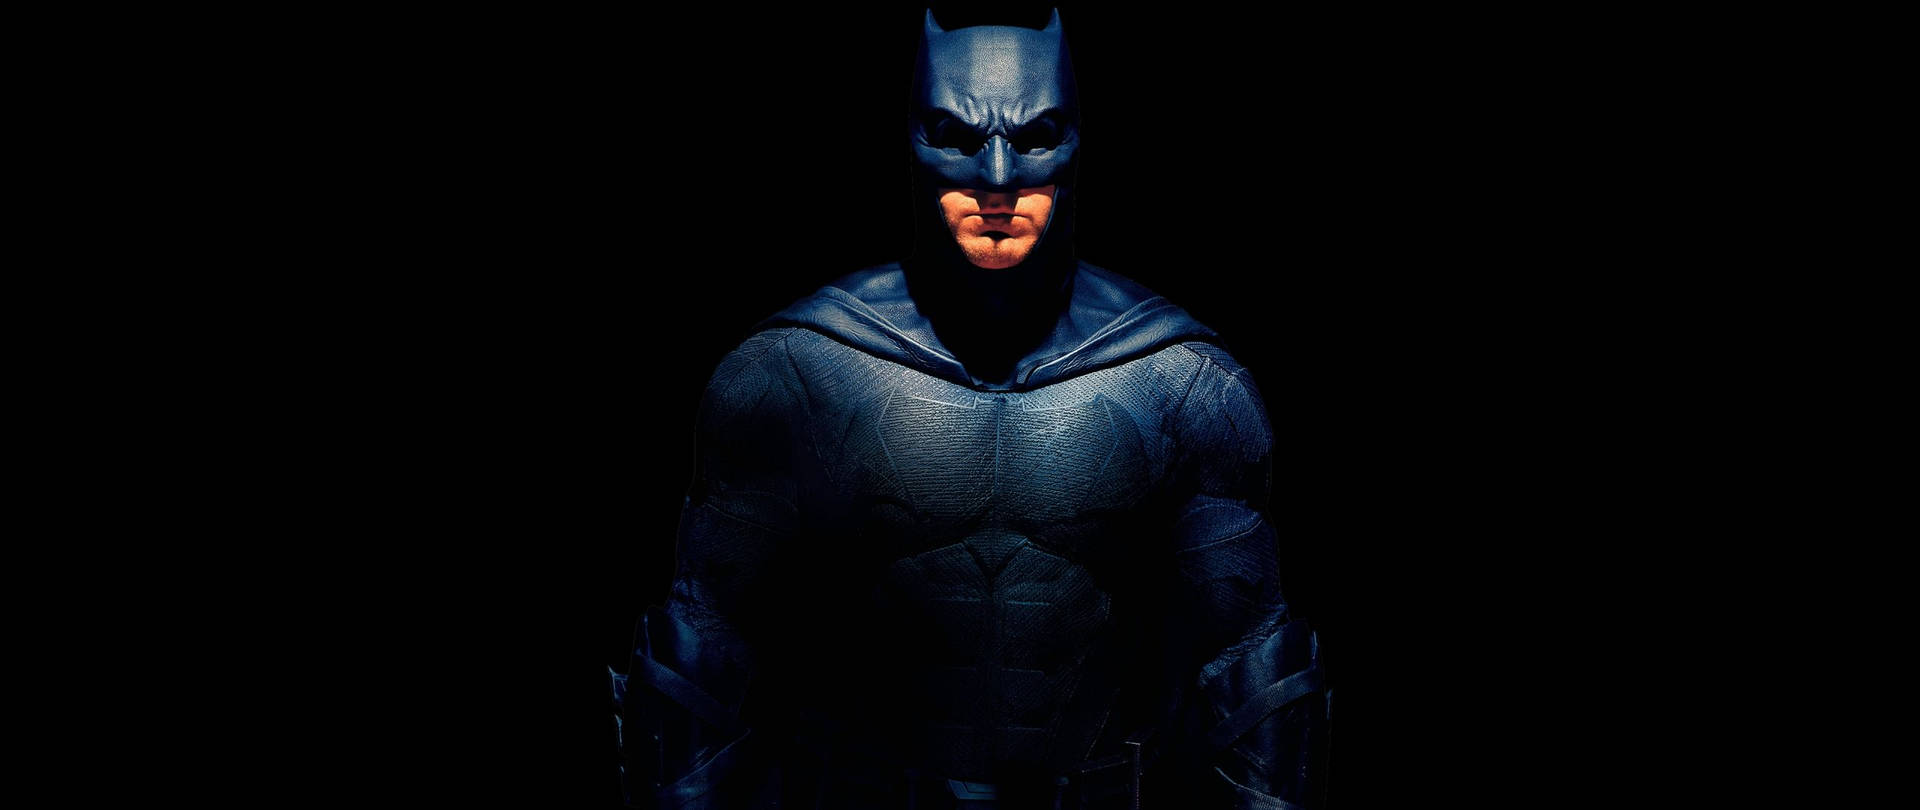 Batman In The Dark Background